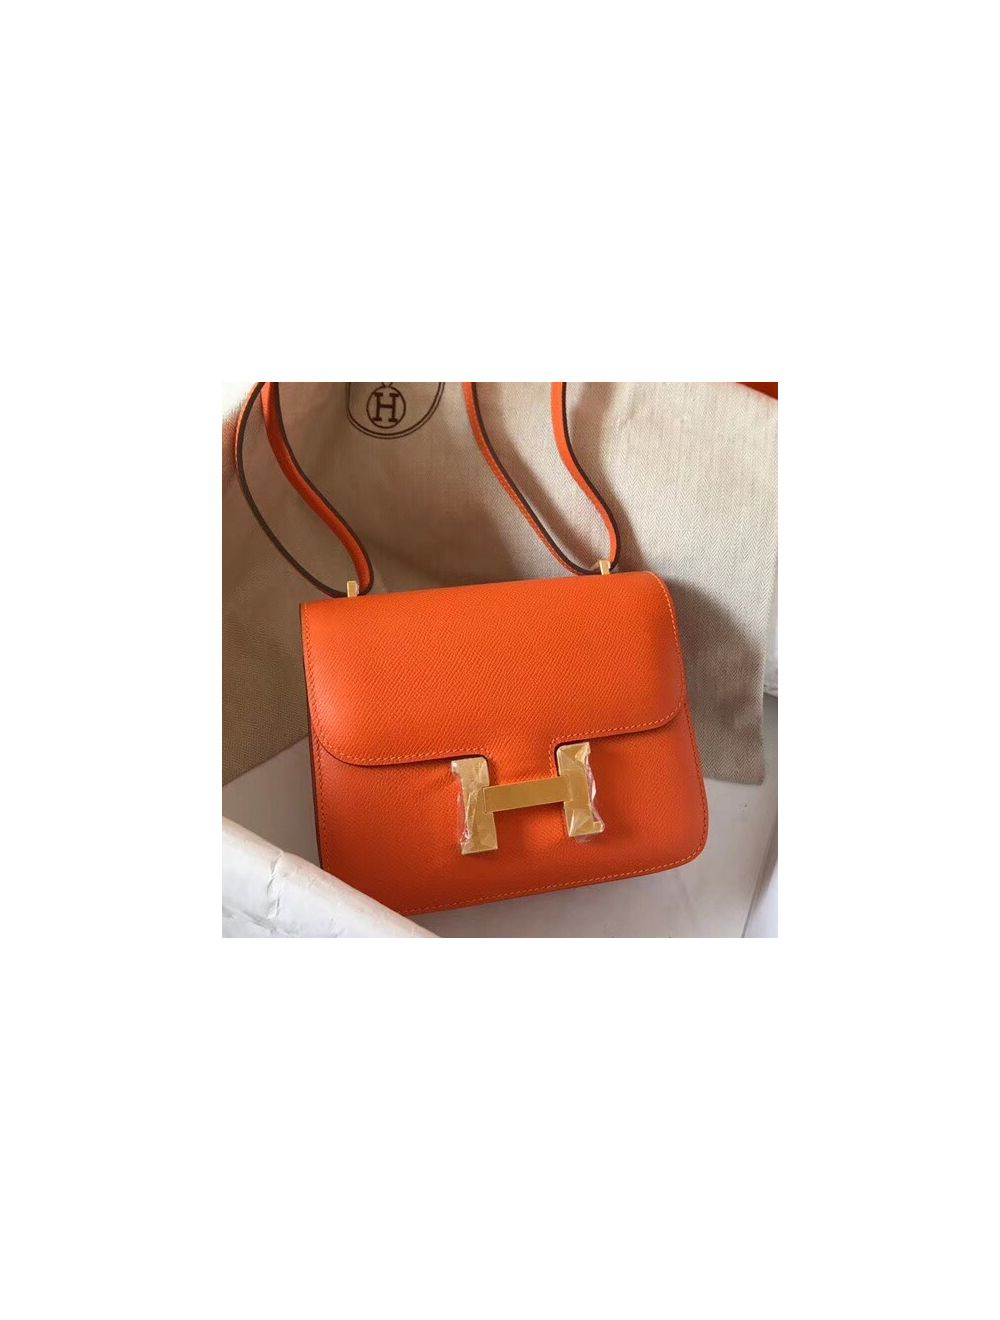 Replica Hermes Constance 18 Handmade Bag In Etain Epsom Calfskin